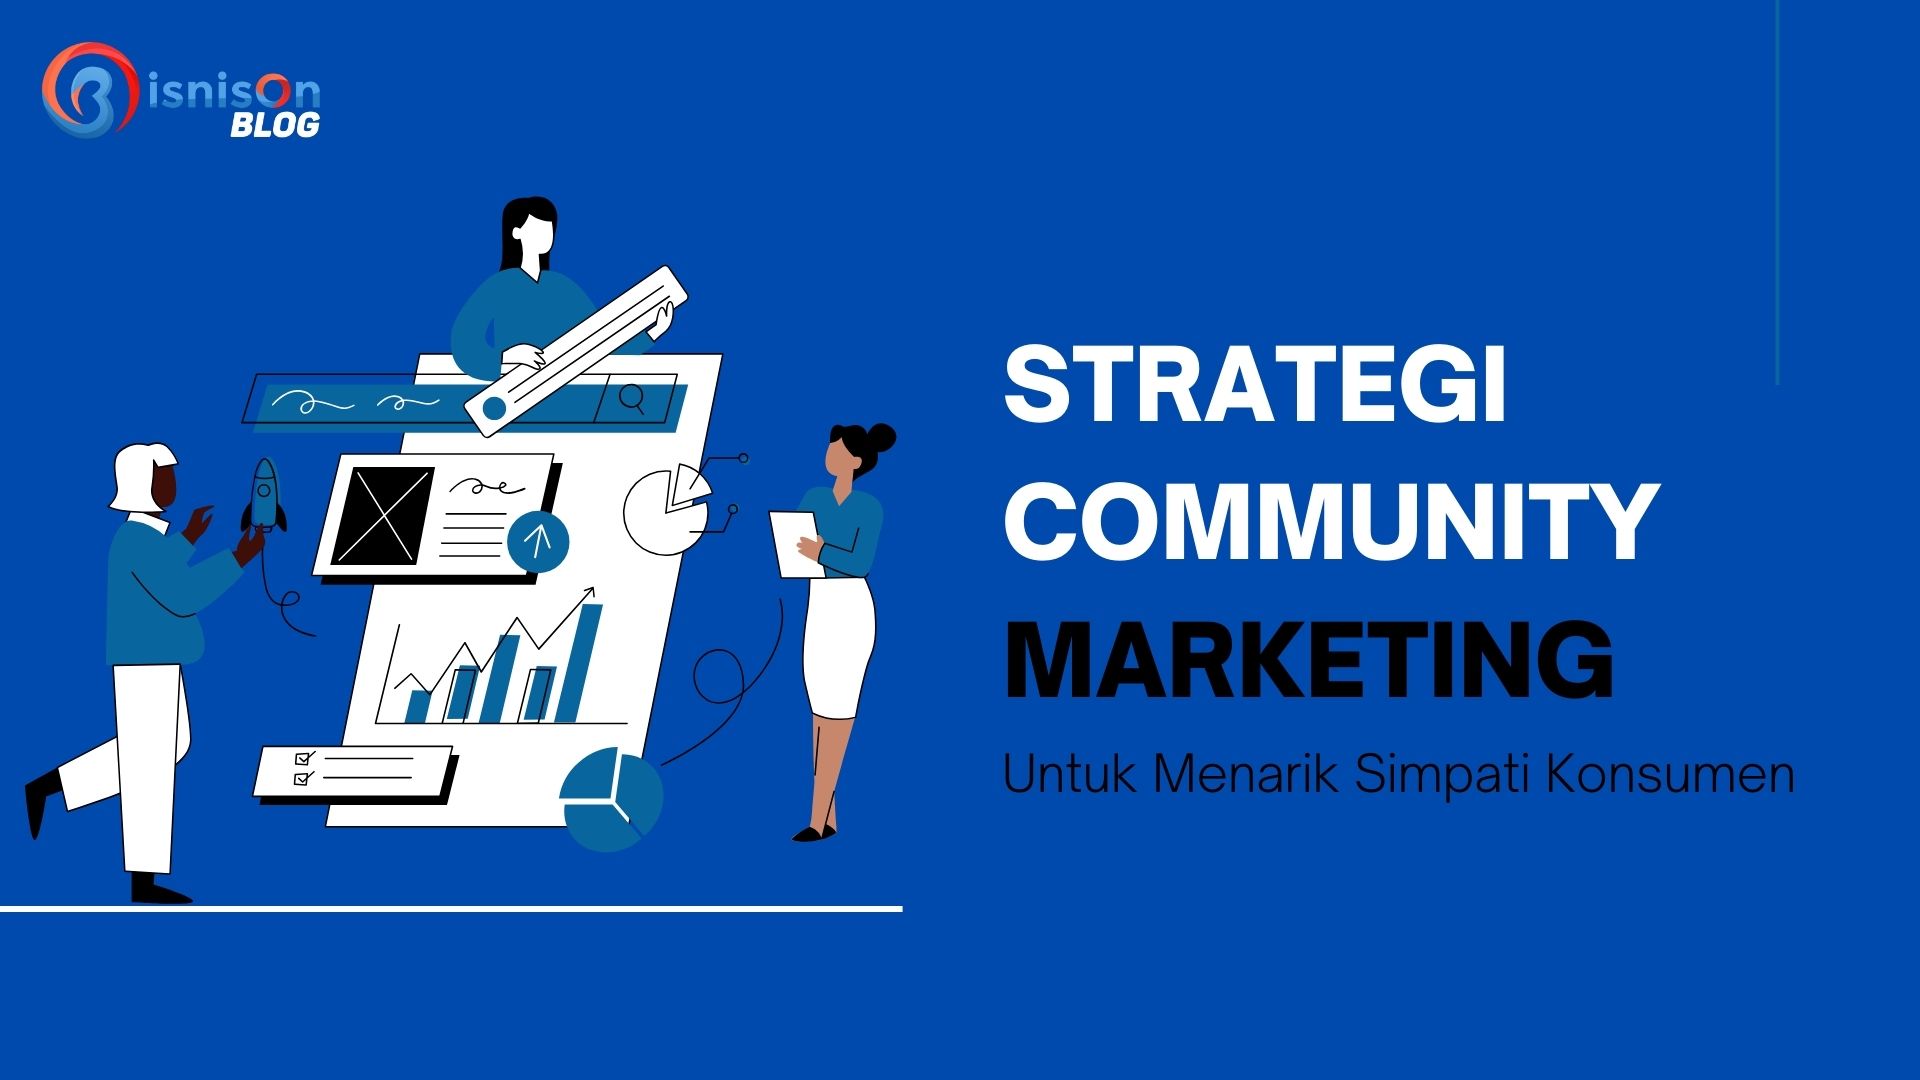 Bangun Strategi Community Marketing Untuk Menarik Simpati Konsumen